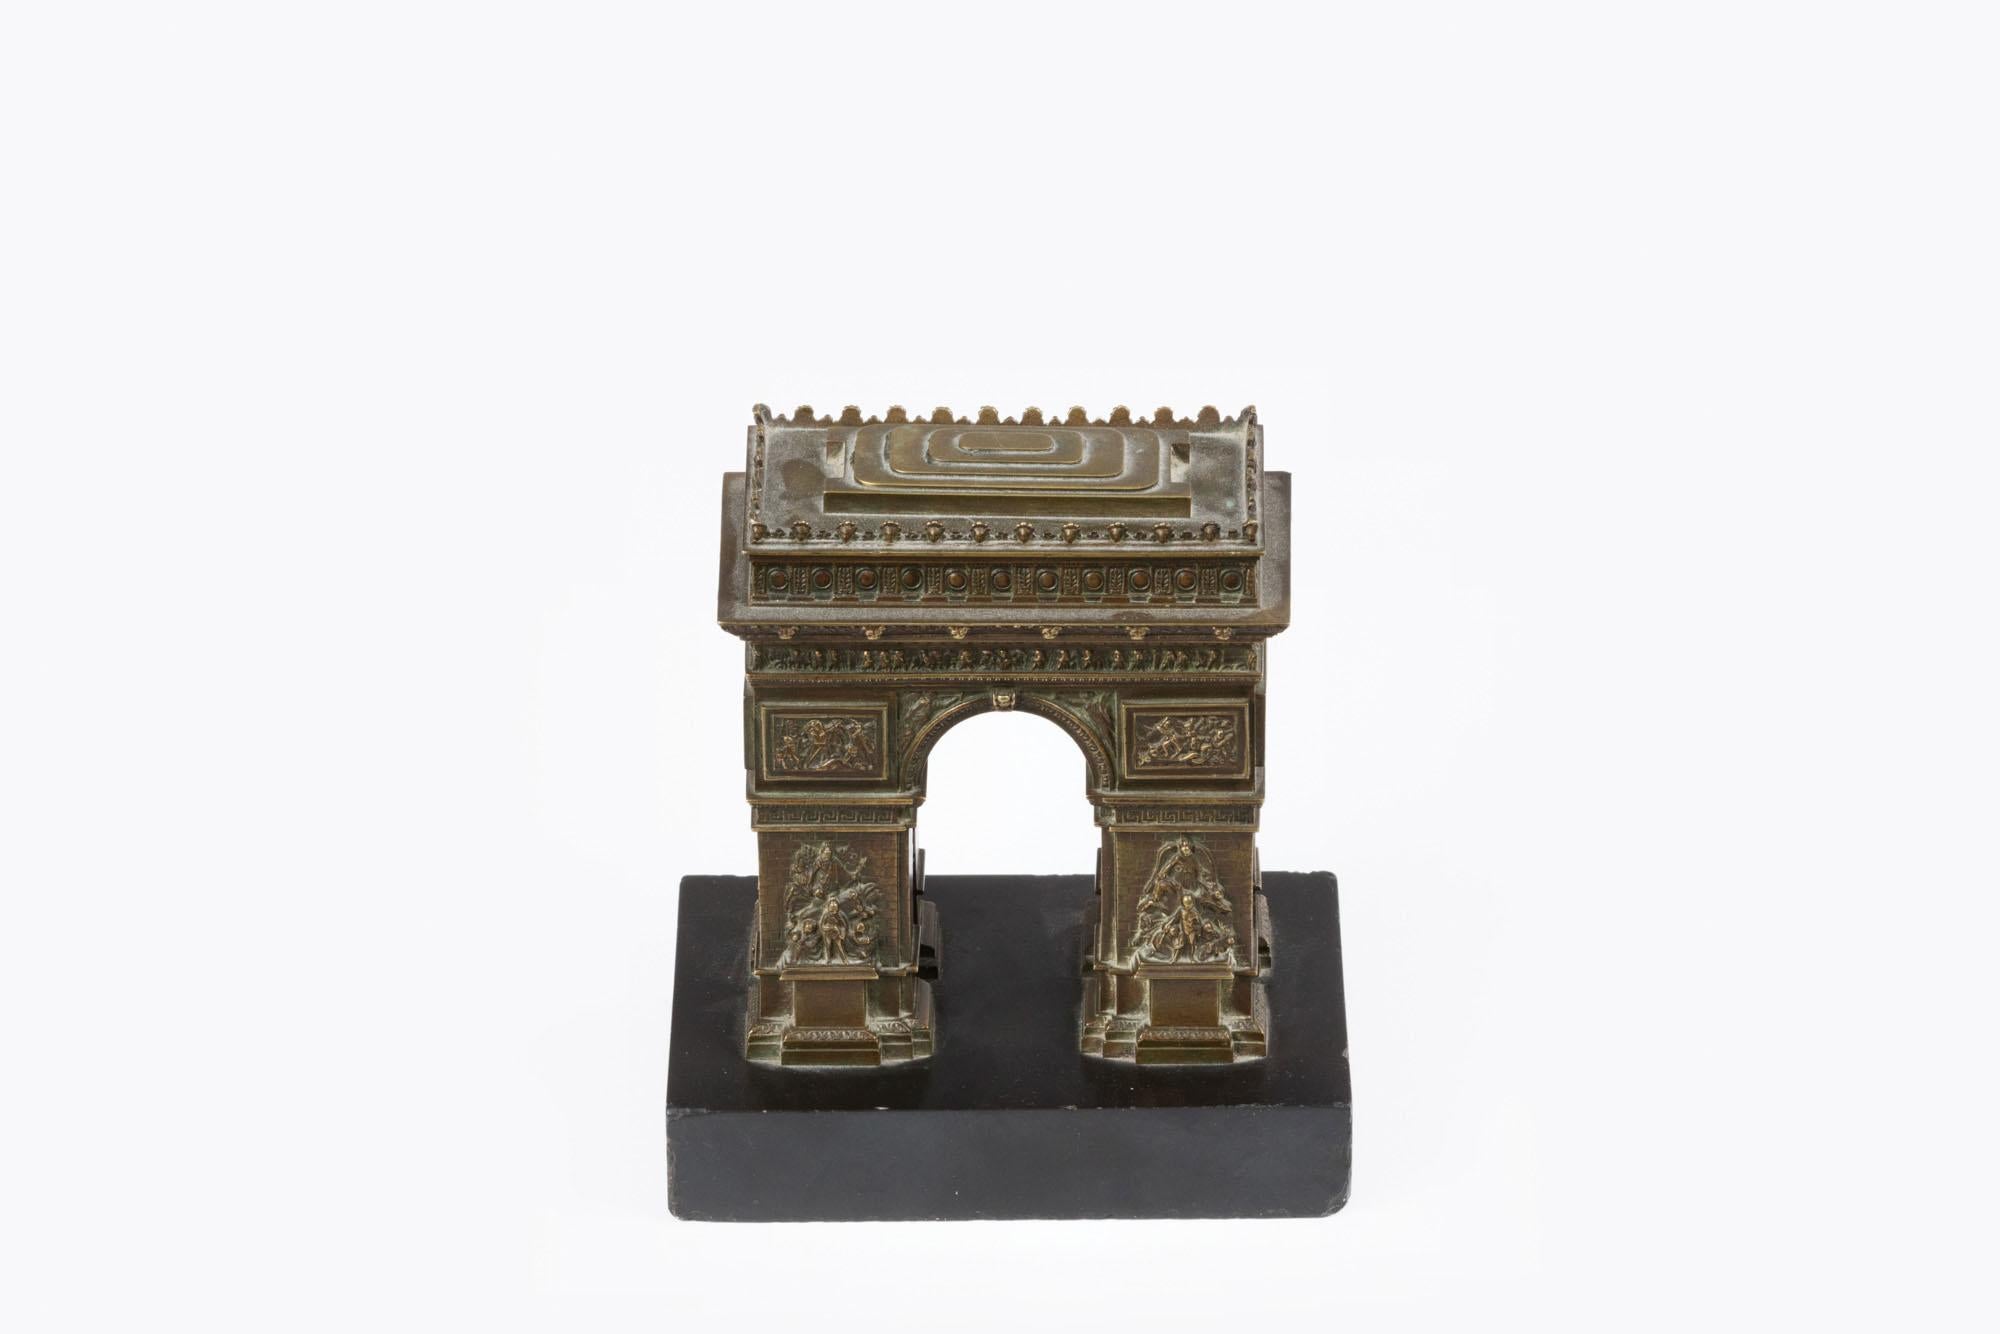 bronze des 19. Jahrhunderts in Form des Arc de Triomphe, Paris, montiert auf Marmorsockel. Die dekorative Form des Bogens verkörpert den neoklassizistischen Stil der Bildhauerei aus der ersten Hälfte des 19. Jahrhunderts und ehrt diejenigen, die für